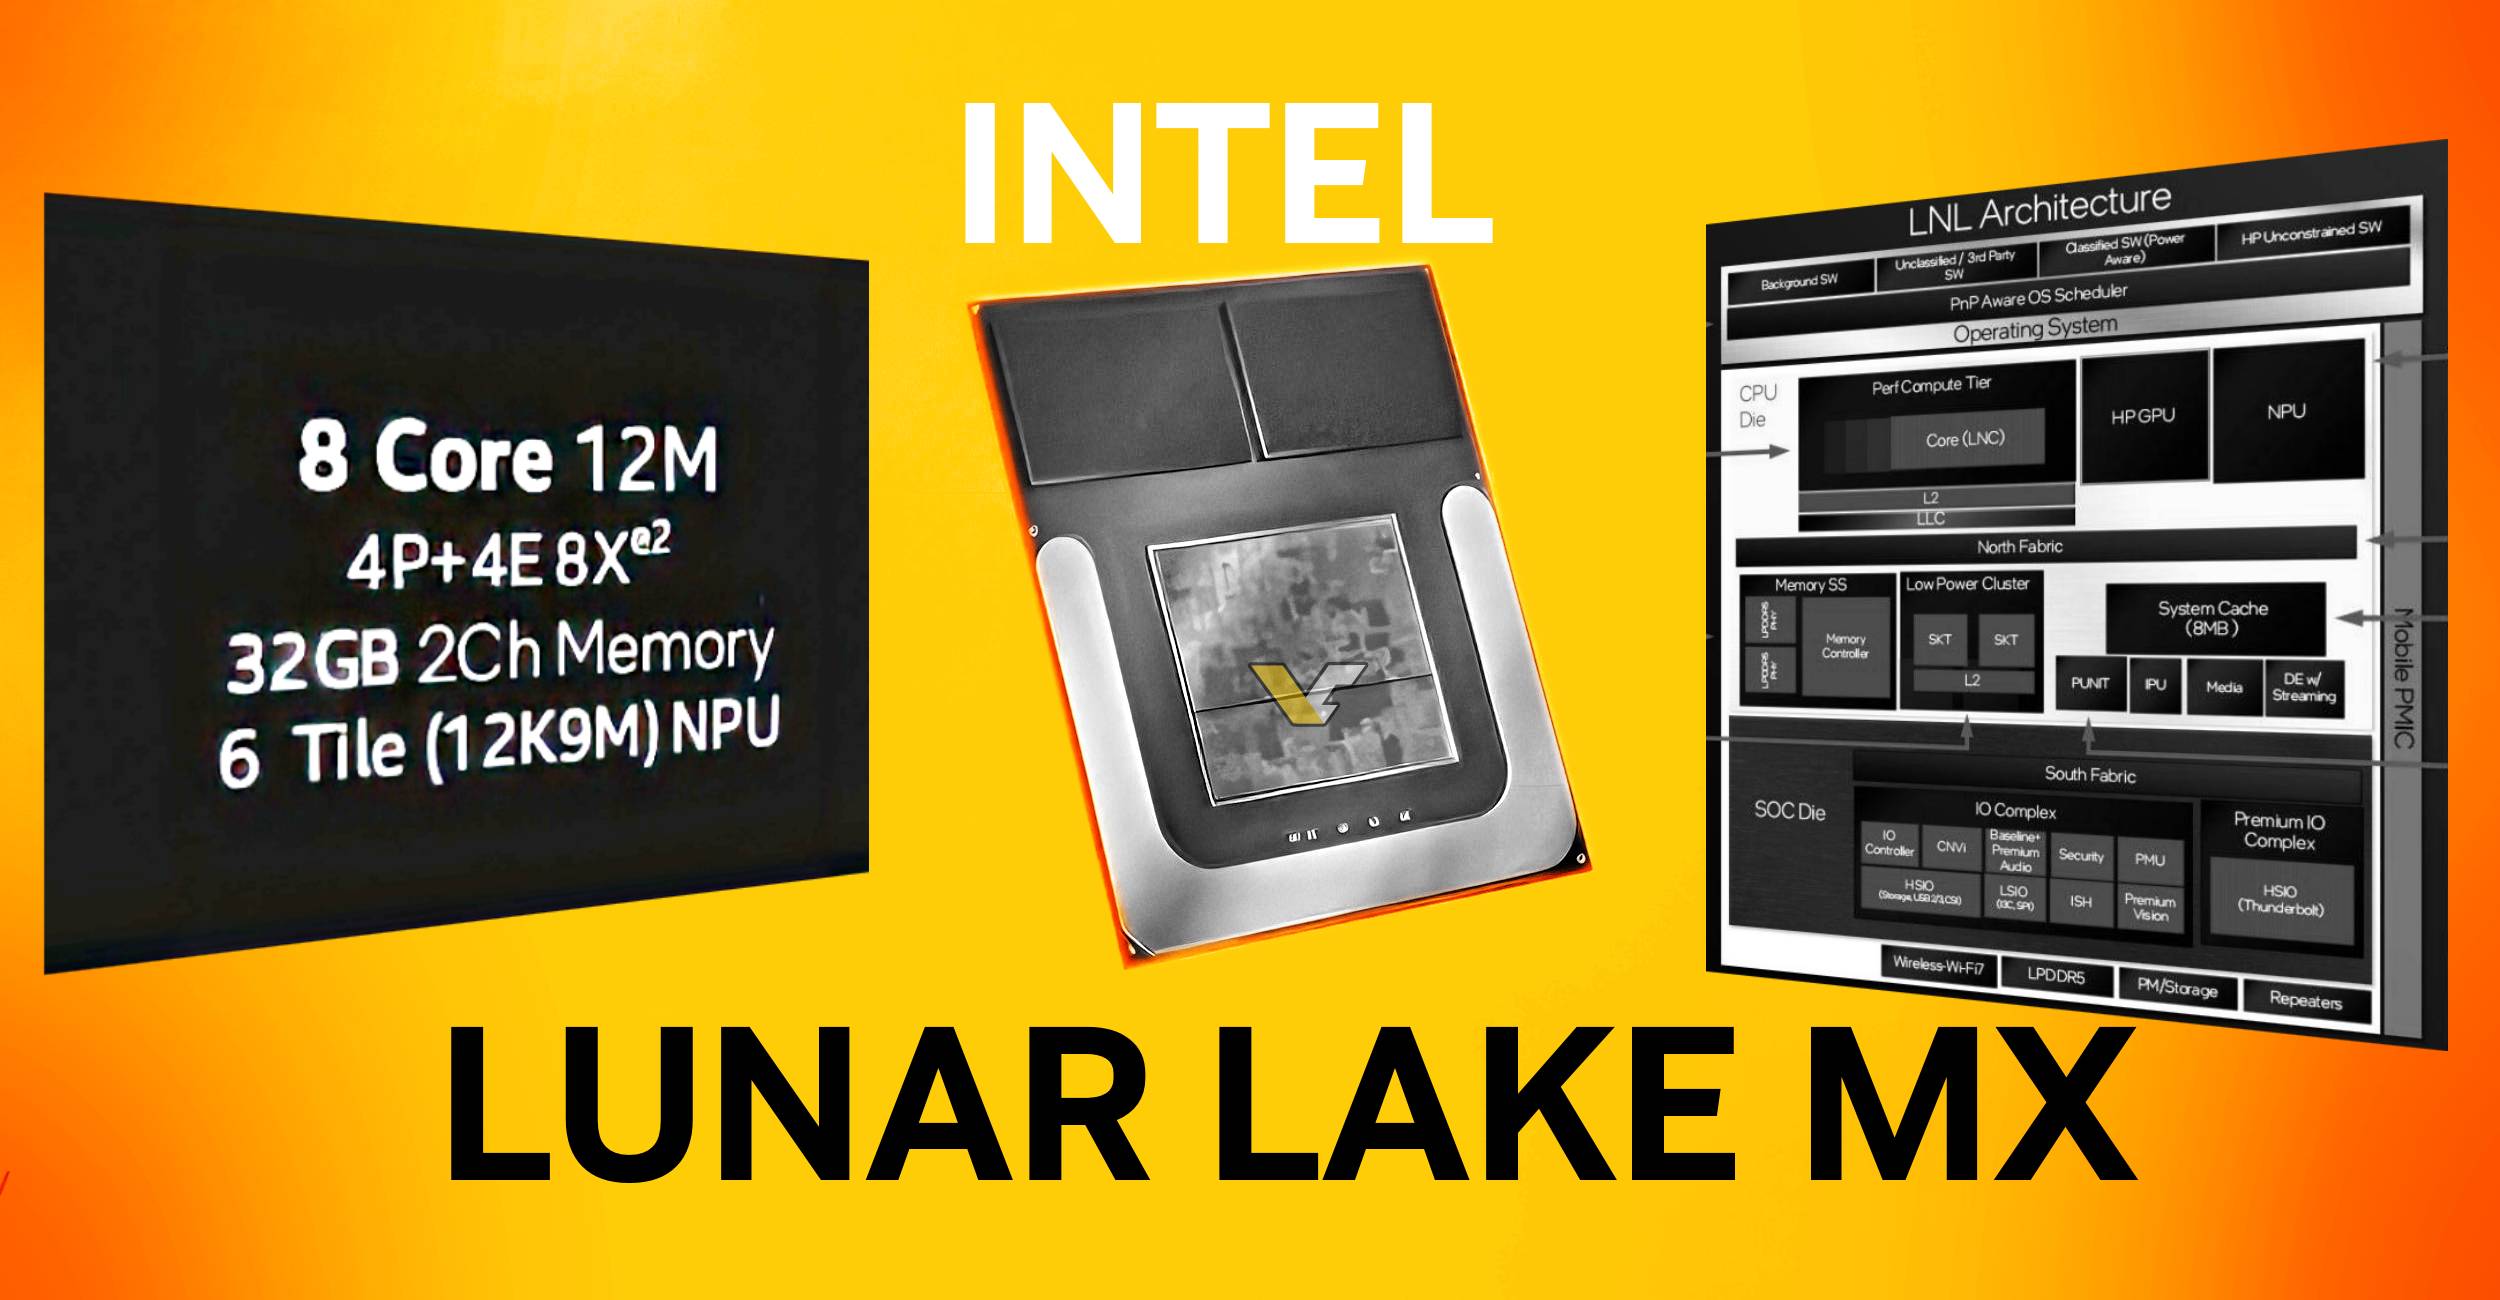 Intel Lunar Lake MX unikl: 4+4 CPU jádra, 8 Xe2 GPU jader, uzel TSMC N3B a podpora DisplayPort 2.1